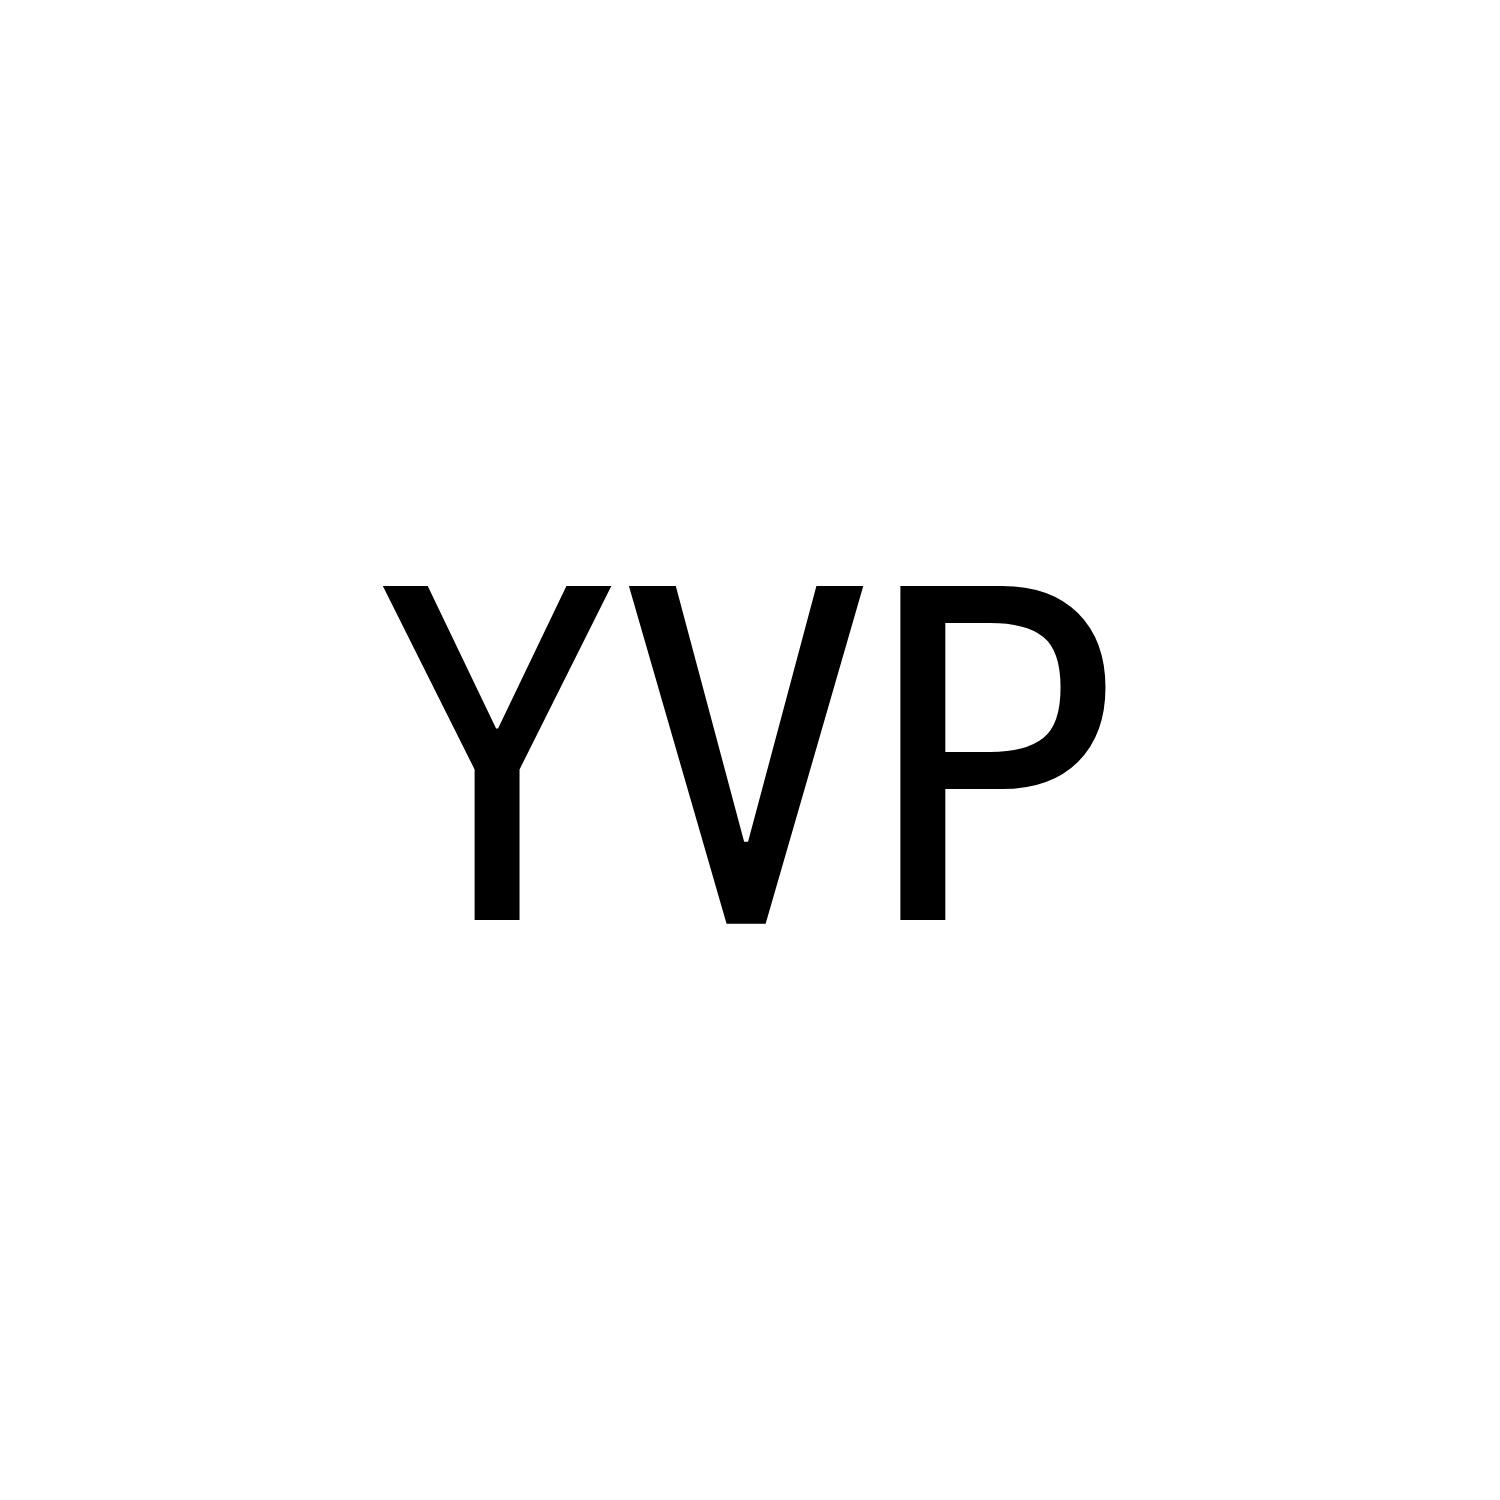 YVP